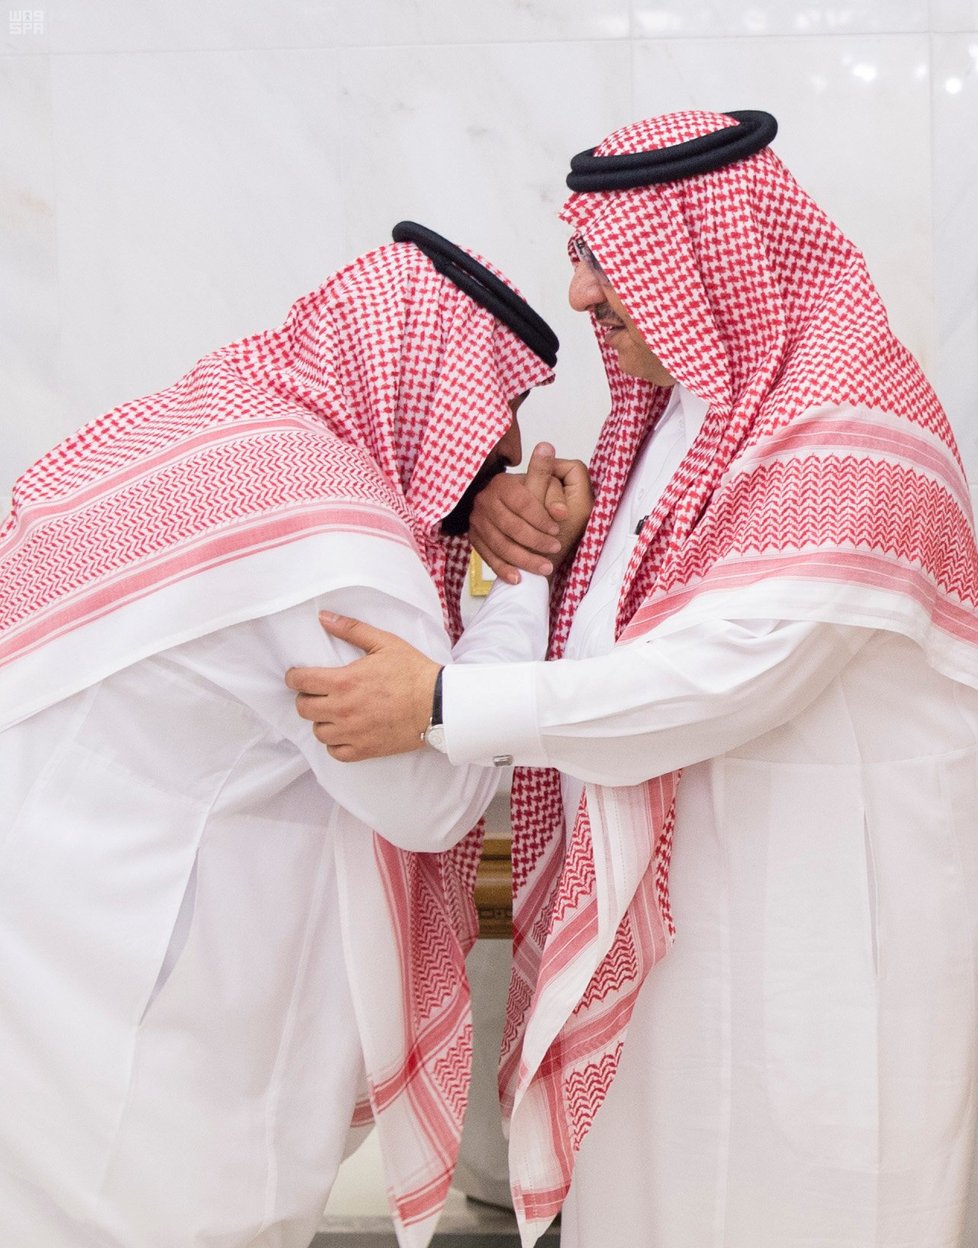 Nový následník trůnu Muhammad bin Salmán líbá ruku svému předchůdci Muhammadu bin Najífovi.